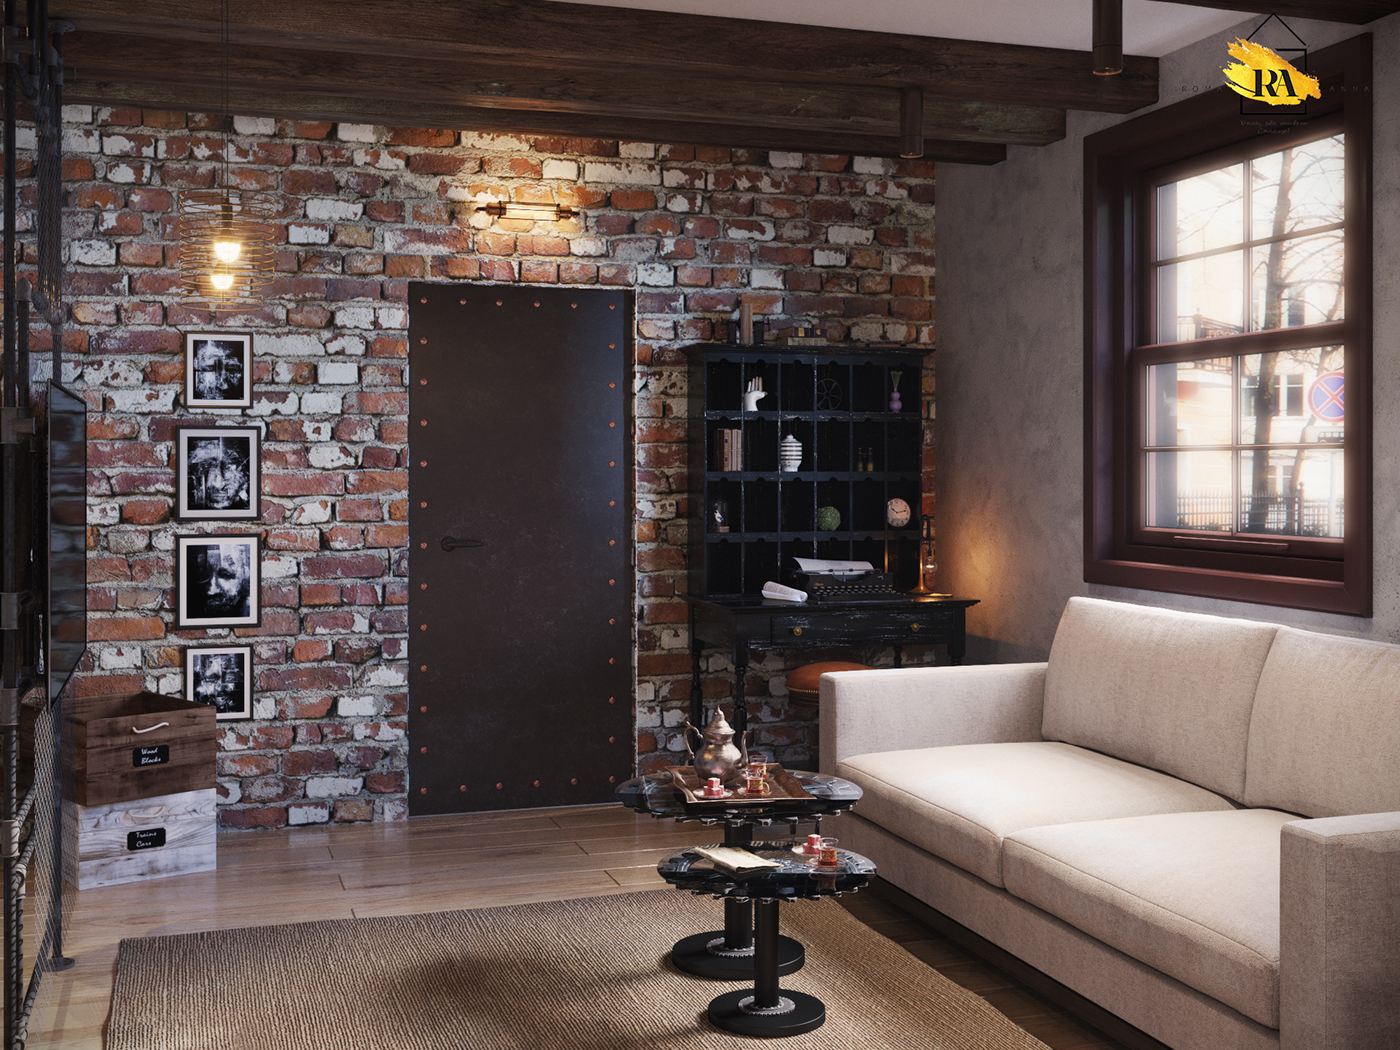 Salon-salle à manger de style indo dans 3d max corona render image